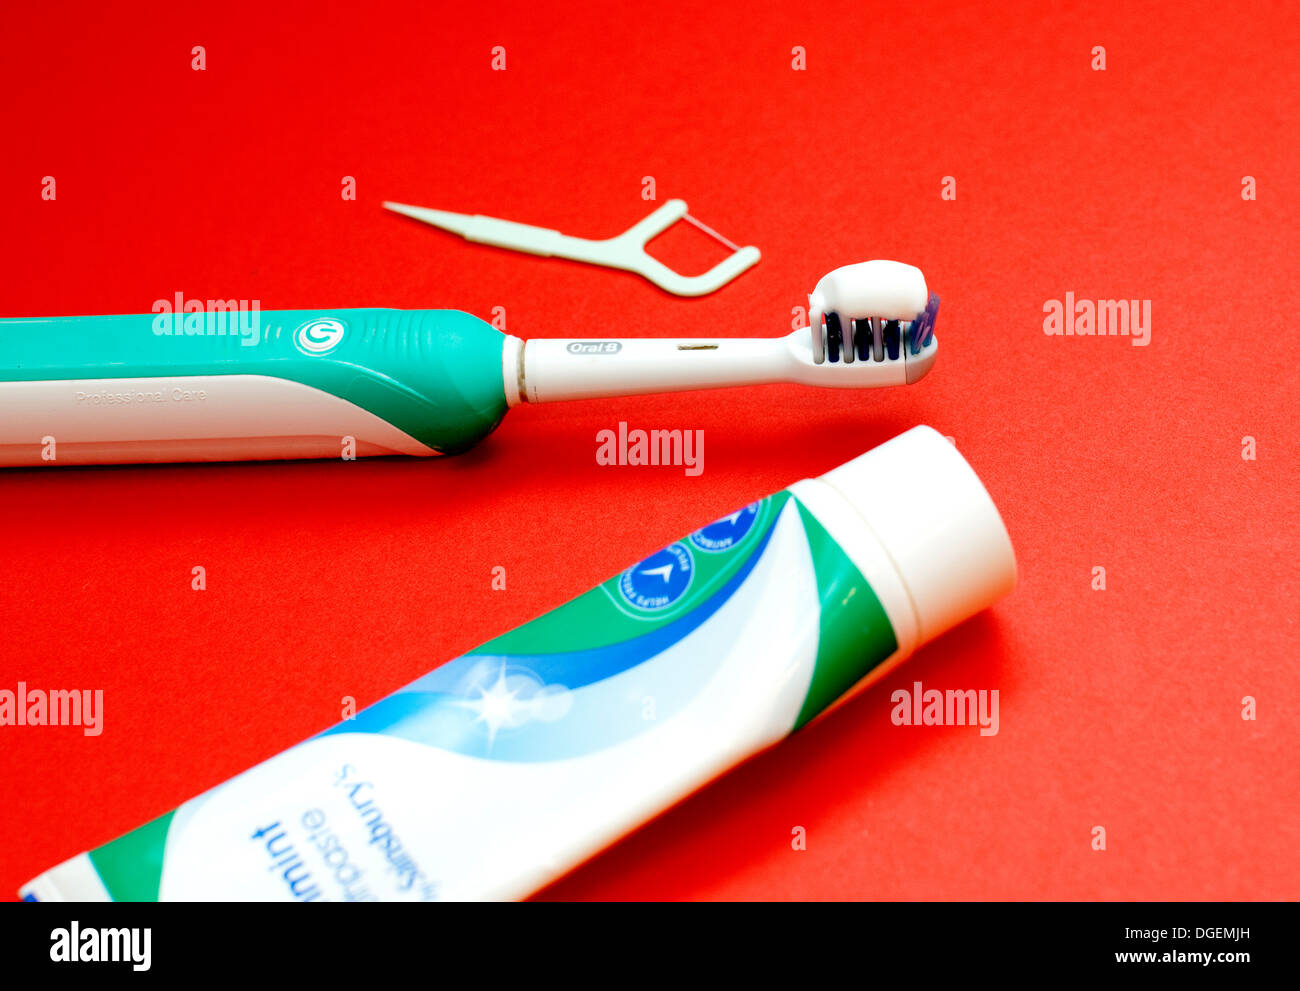 Cepillo dental eléctrico y otros artículos para la higiene dental, Londres Foto de stock